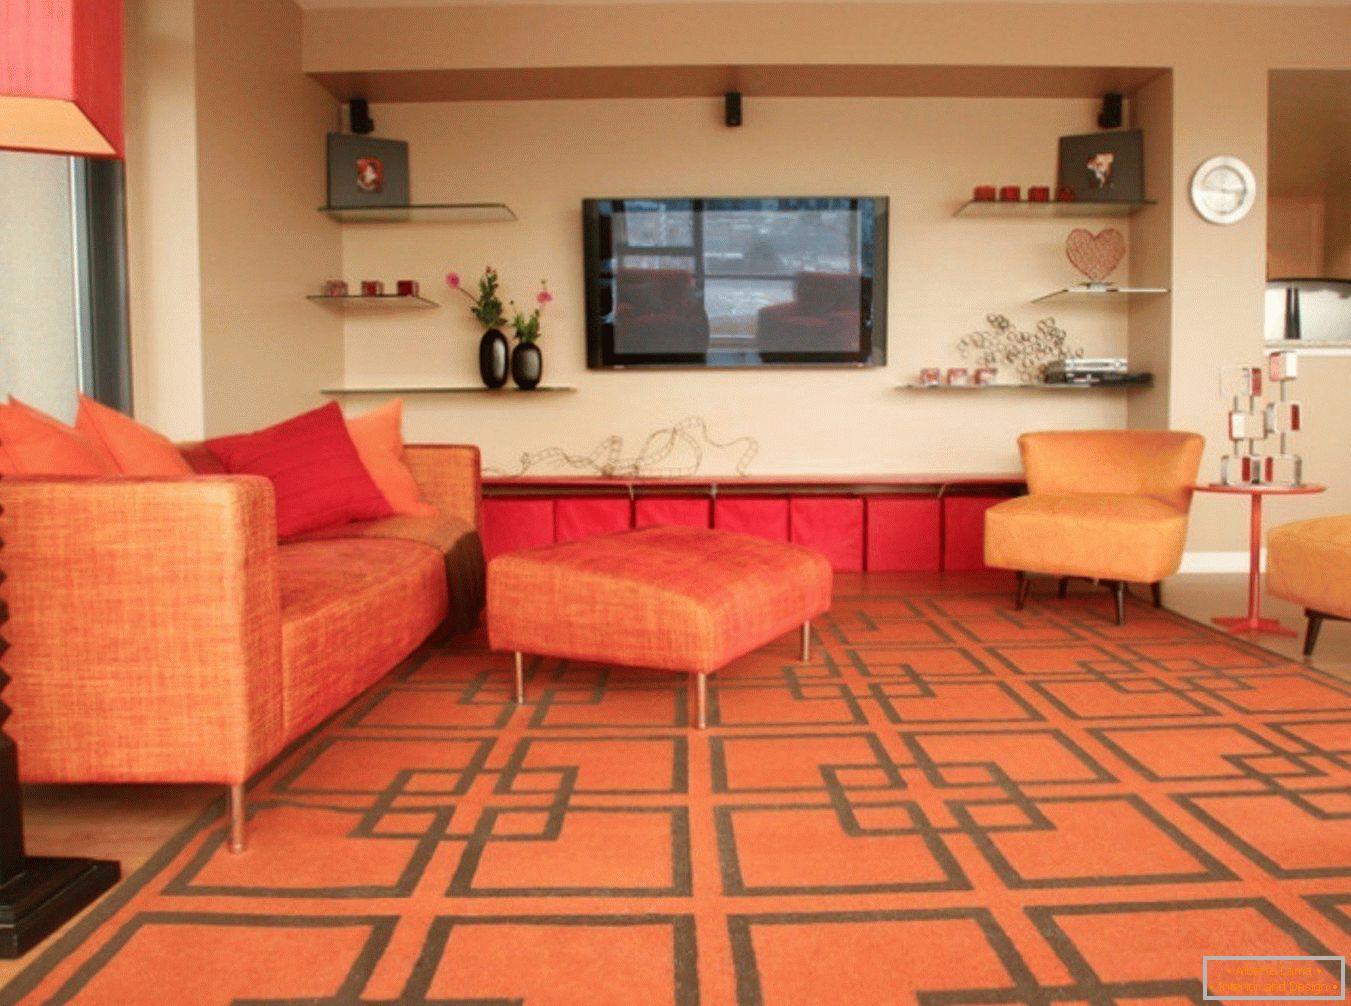 Orange carpet and furniture